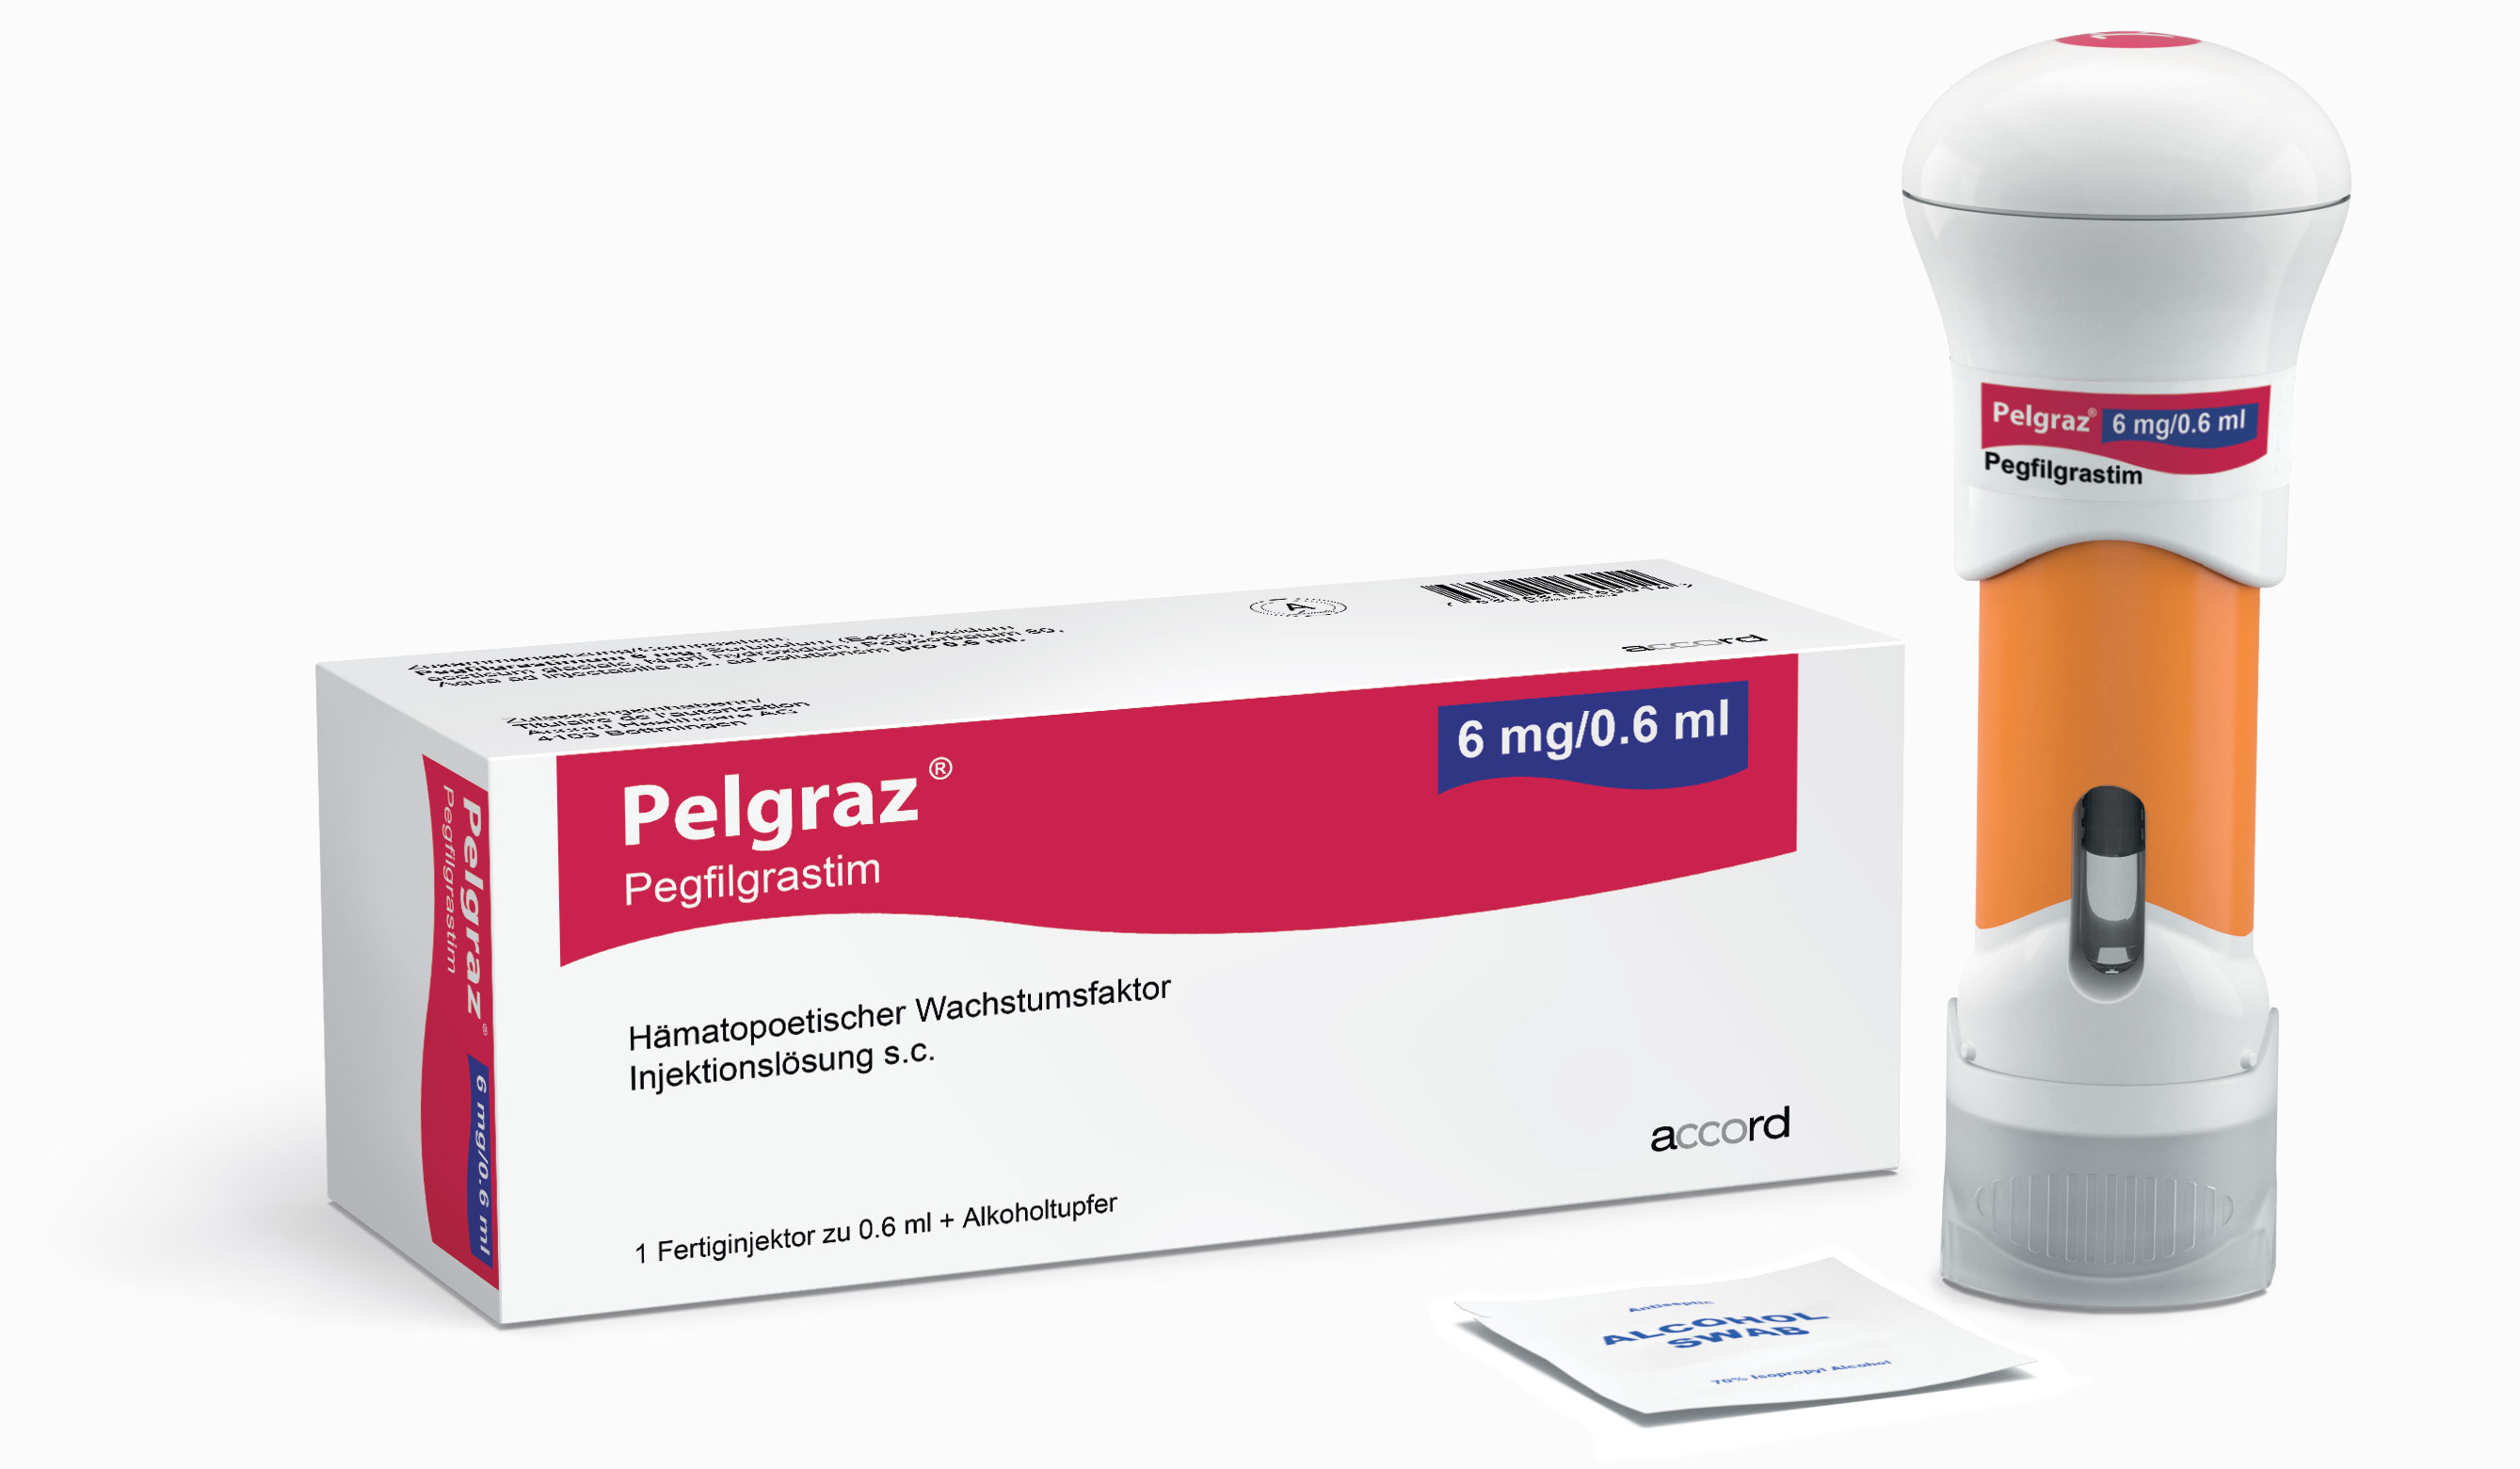 Pelgraz® 6 mg/0.6 ml - Fertiginjektor